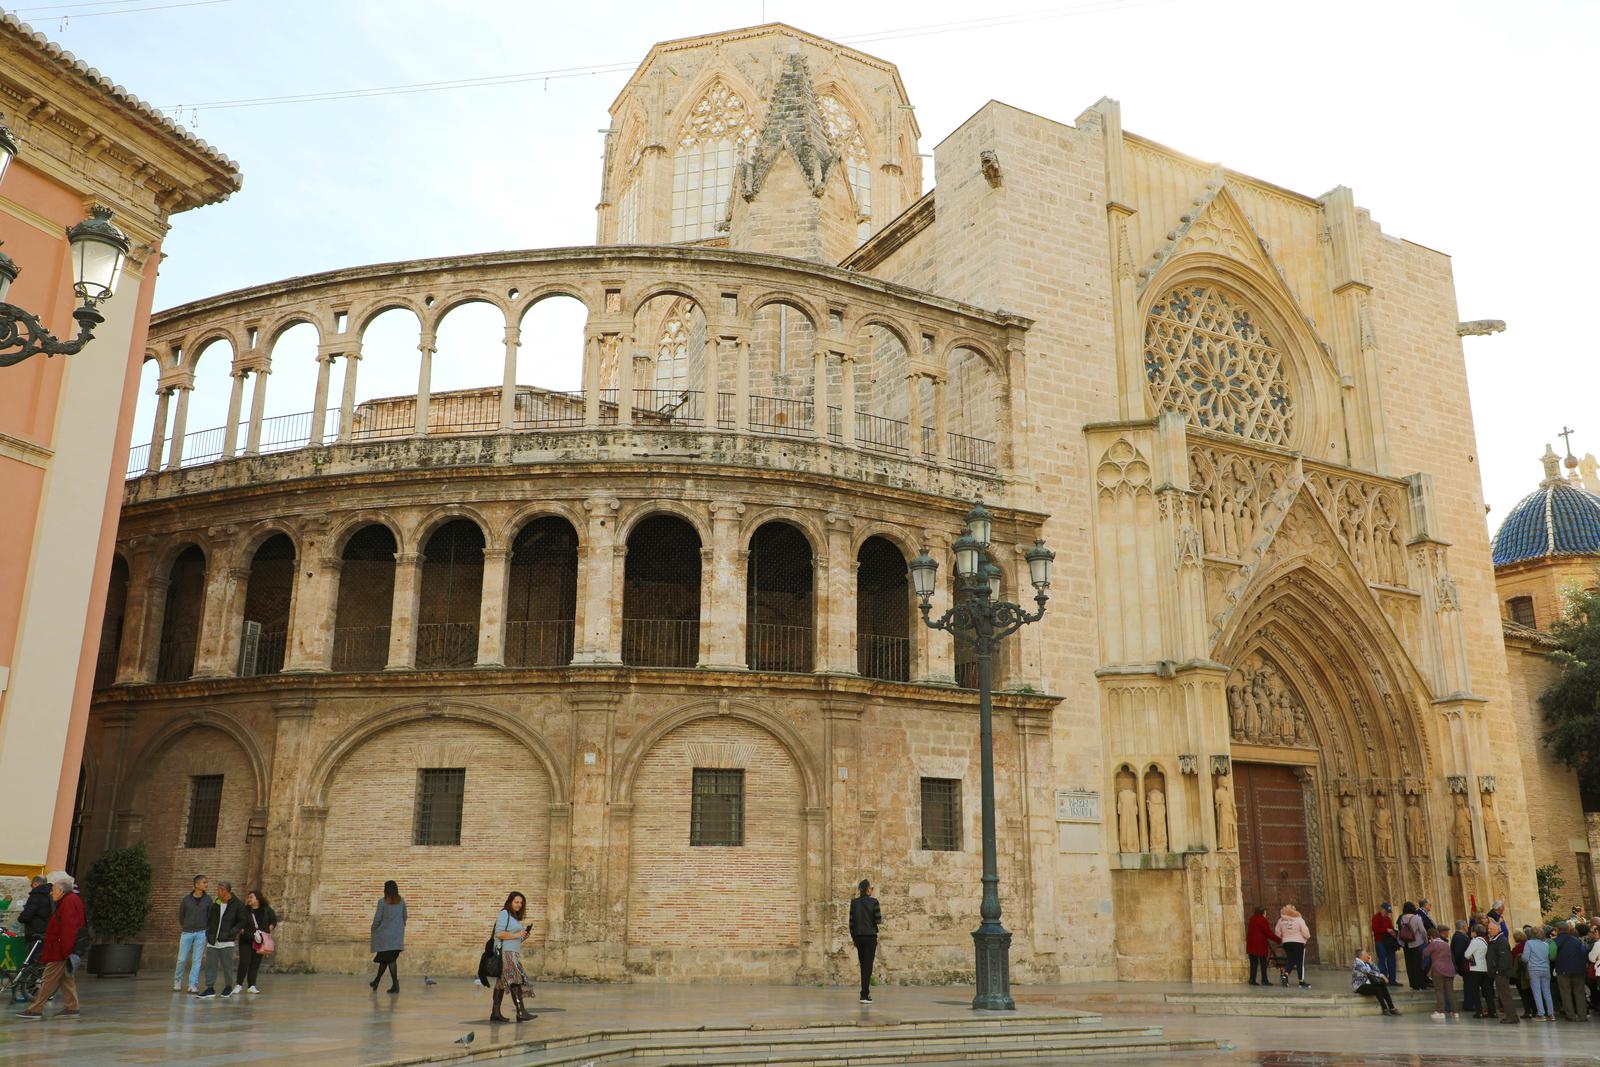 Atrakcja Walencji - Katedra z Świętym Graalem